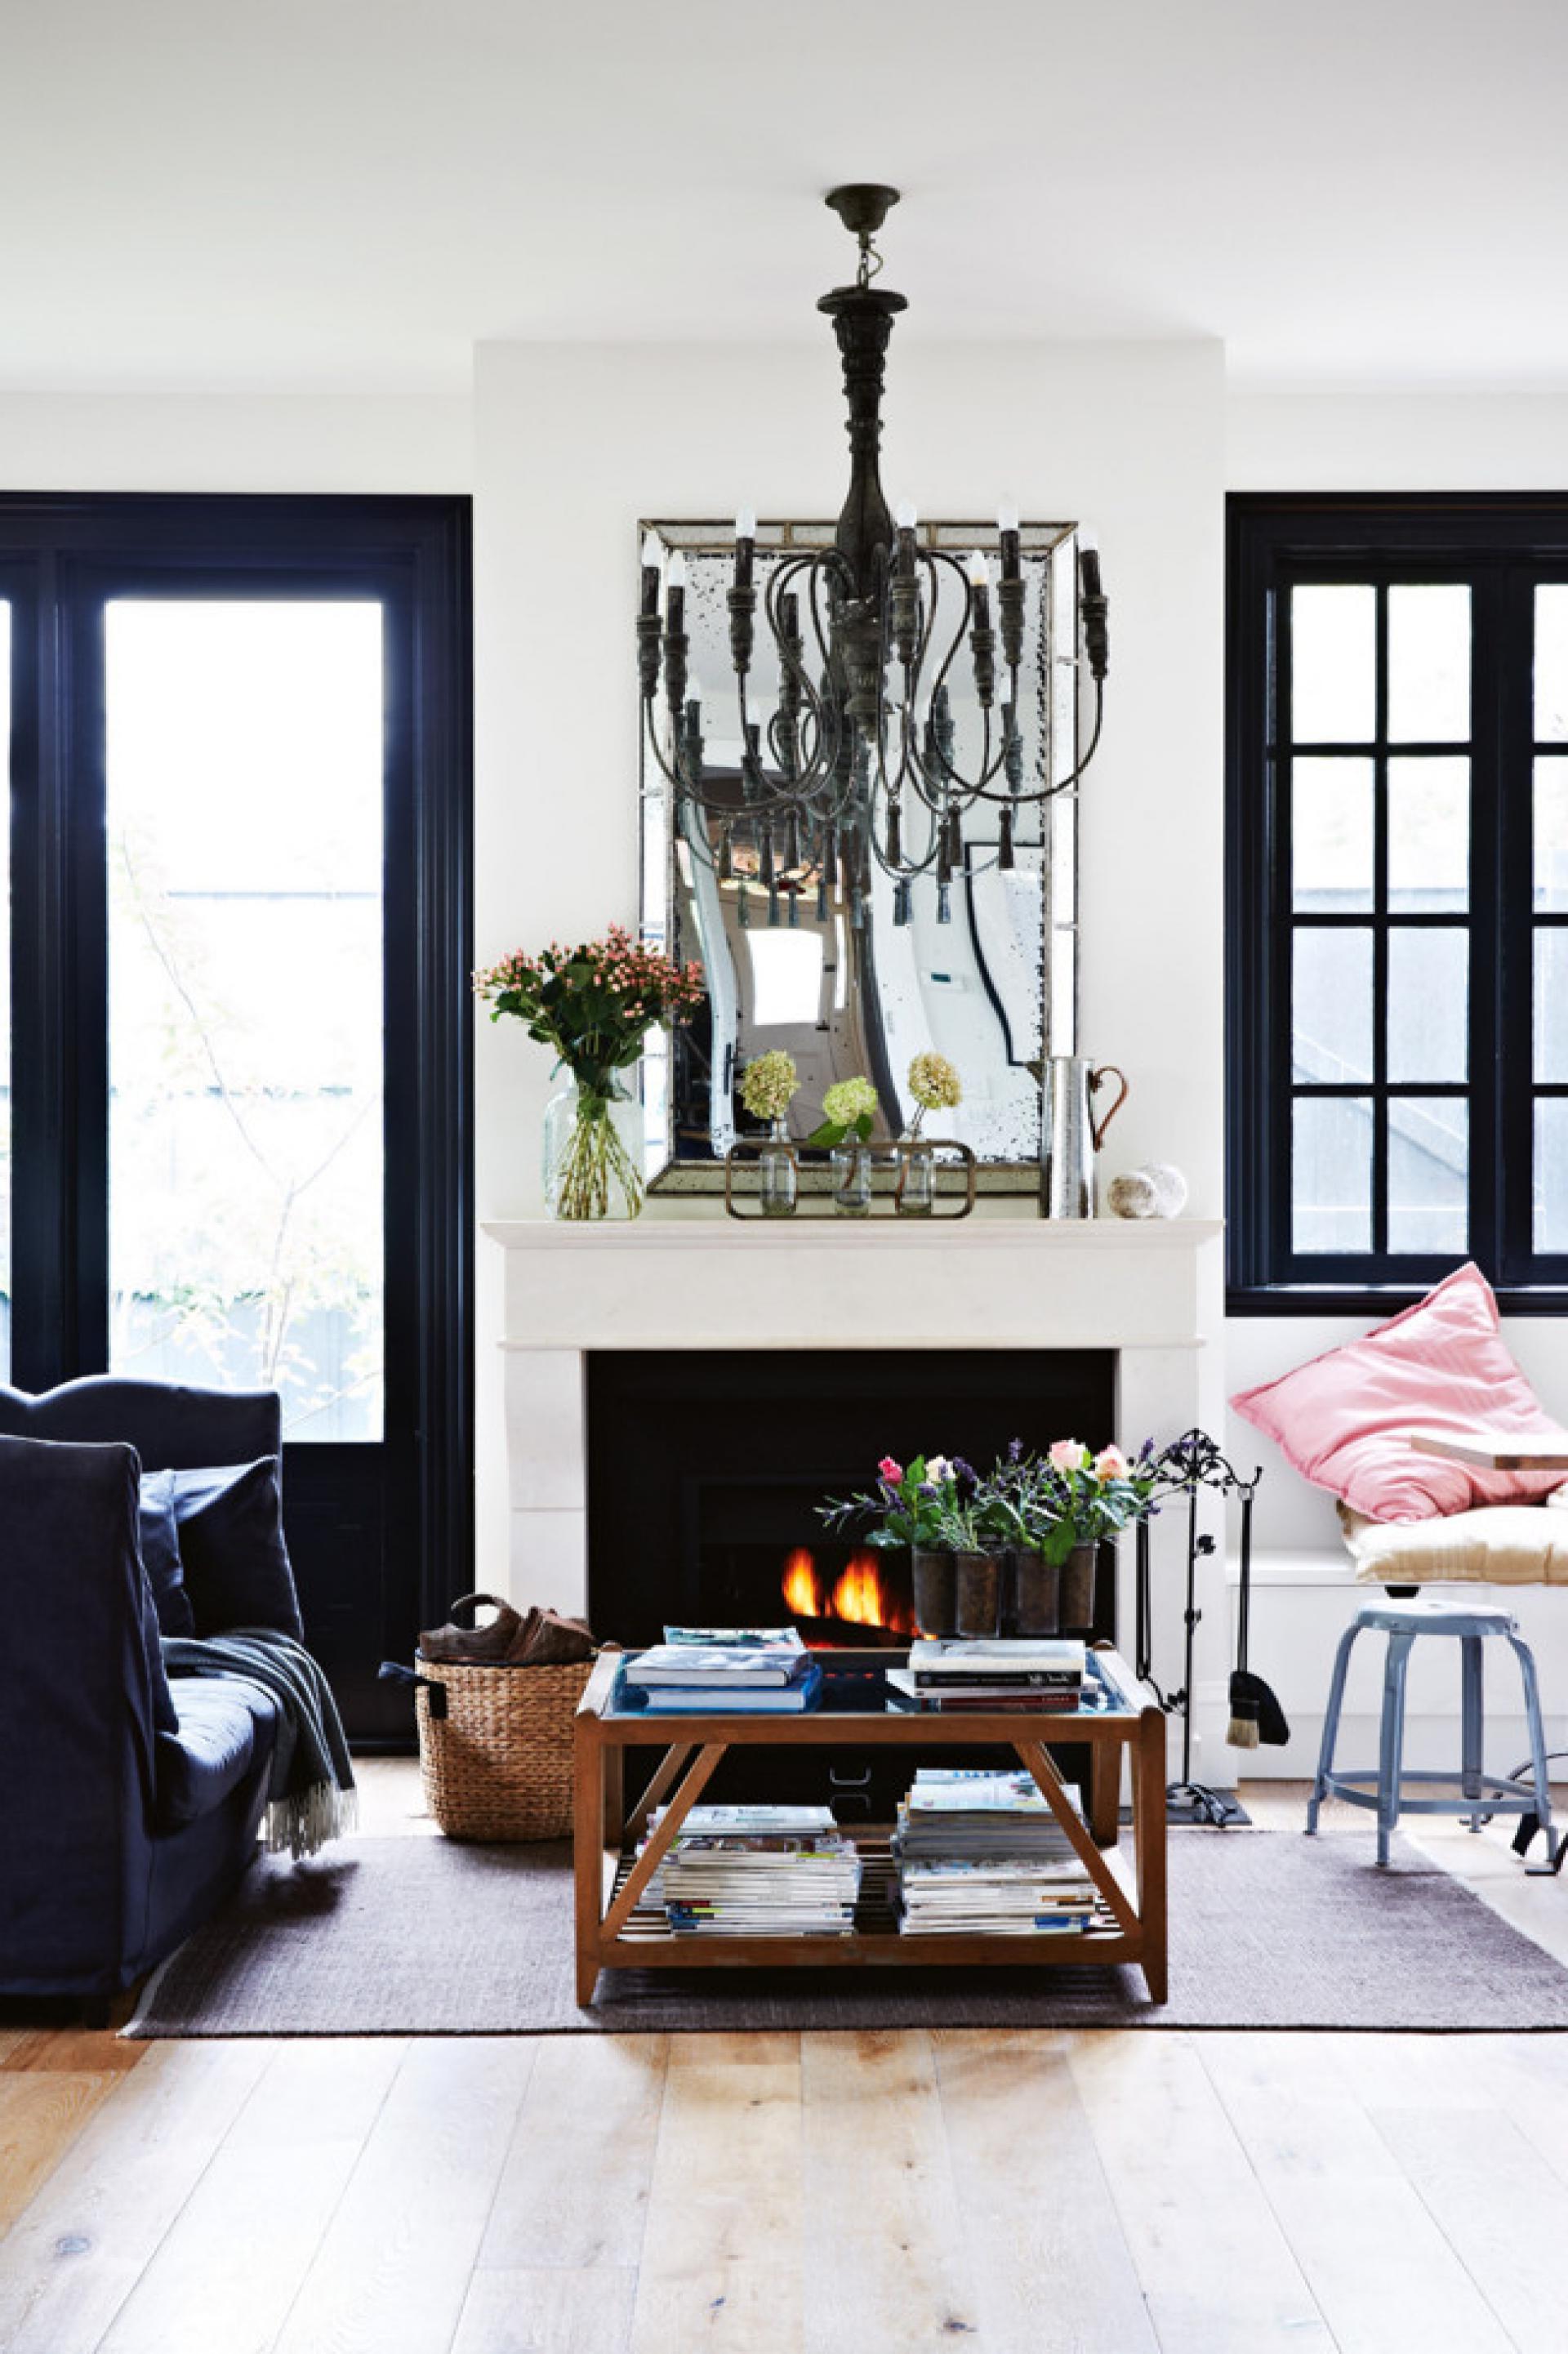 Paris Themed Living Room Decor Ideas | Roy Home Design